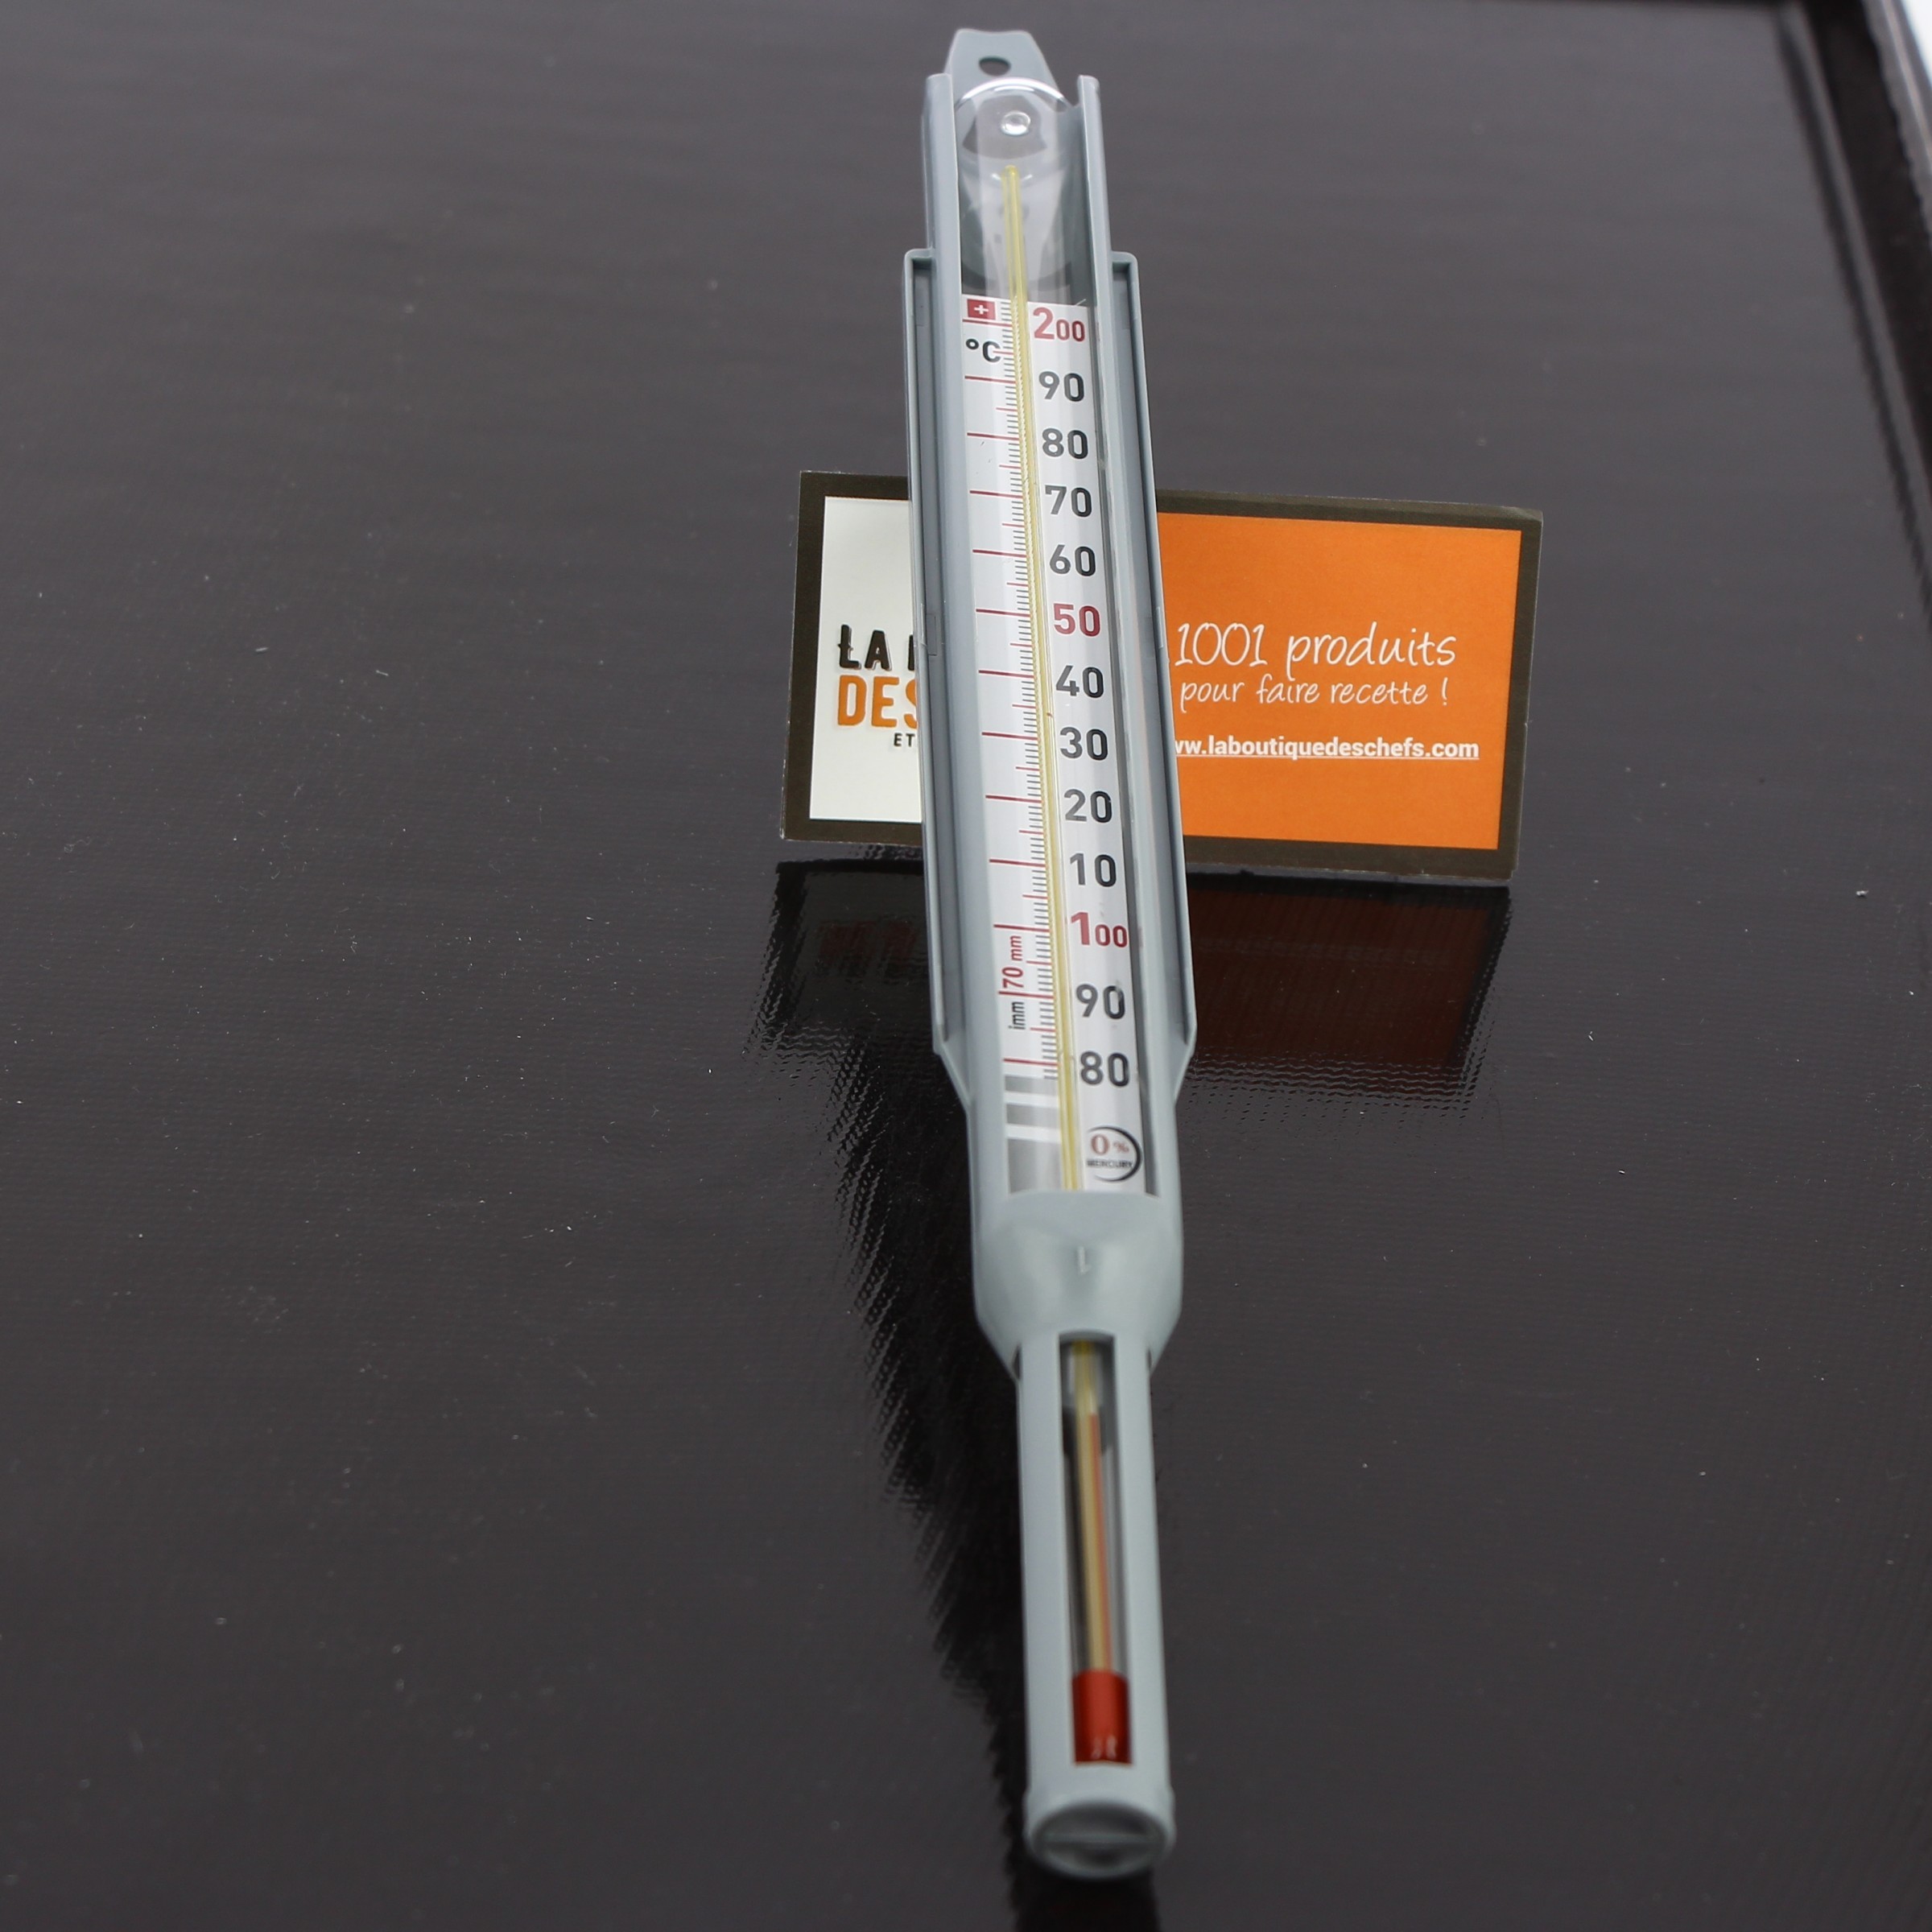 Thermomètre à sucre/confiseur sans mercure +80°C à +200°C - Matfer